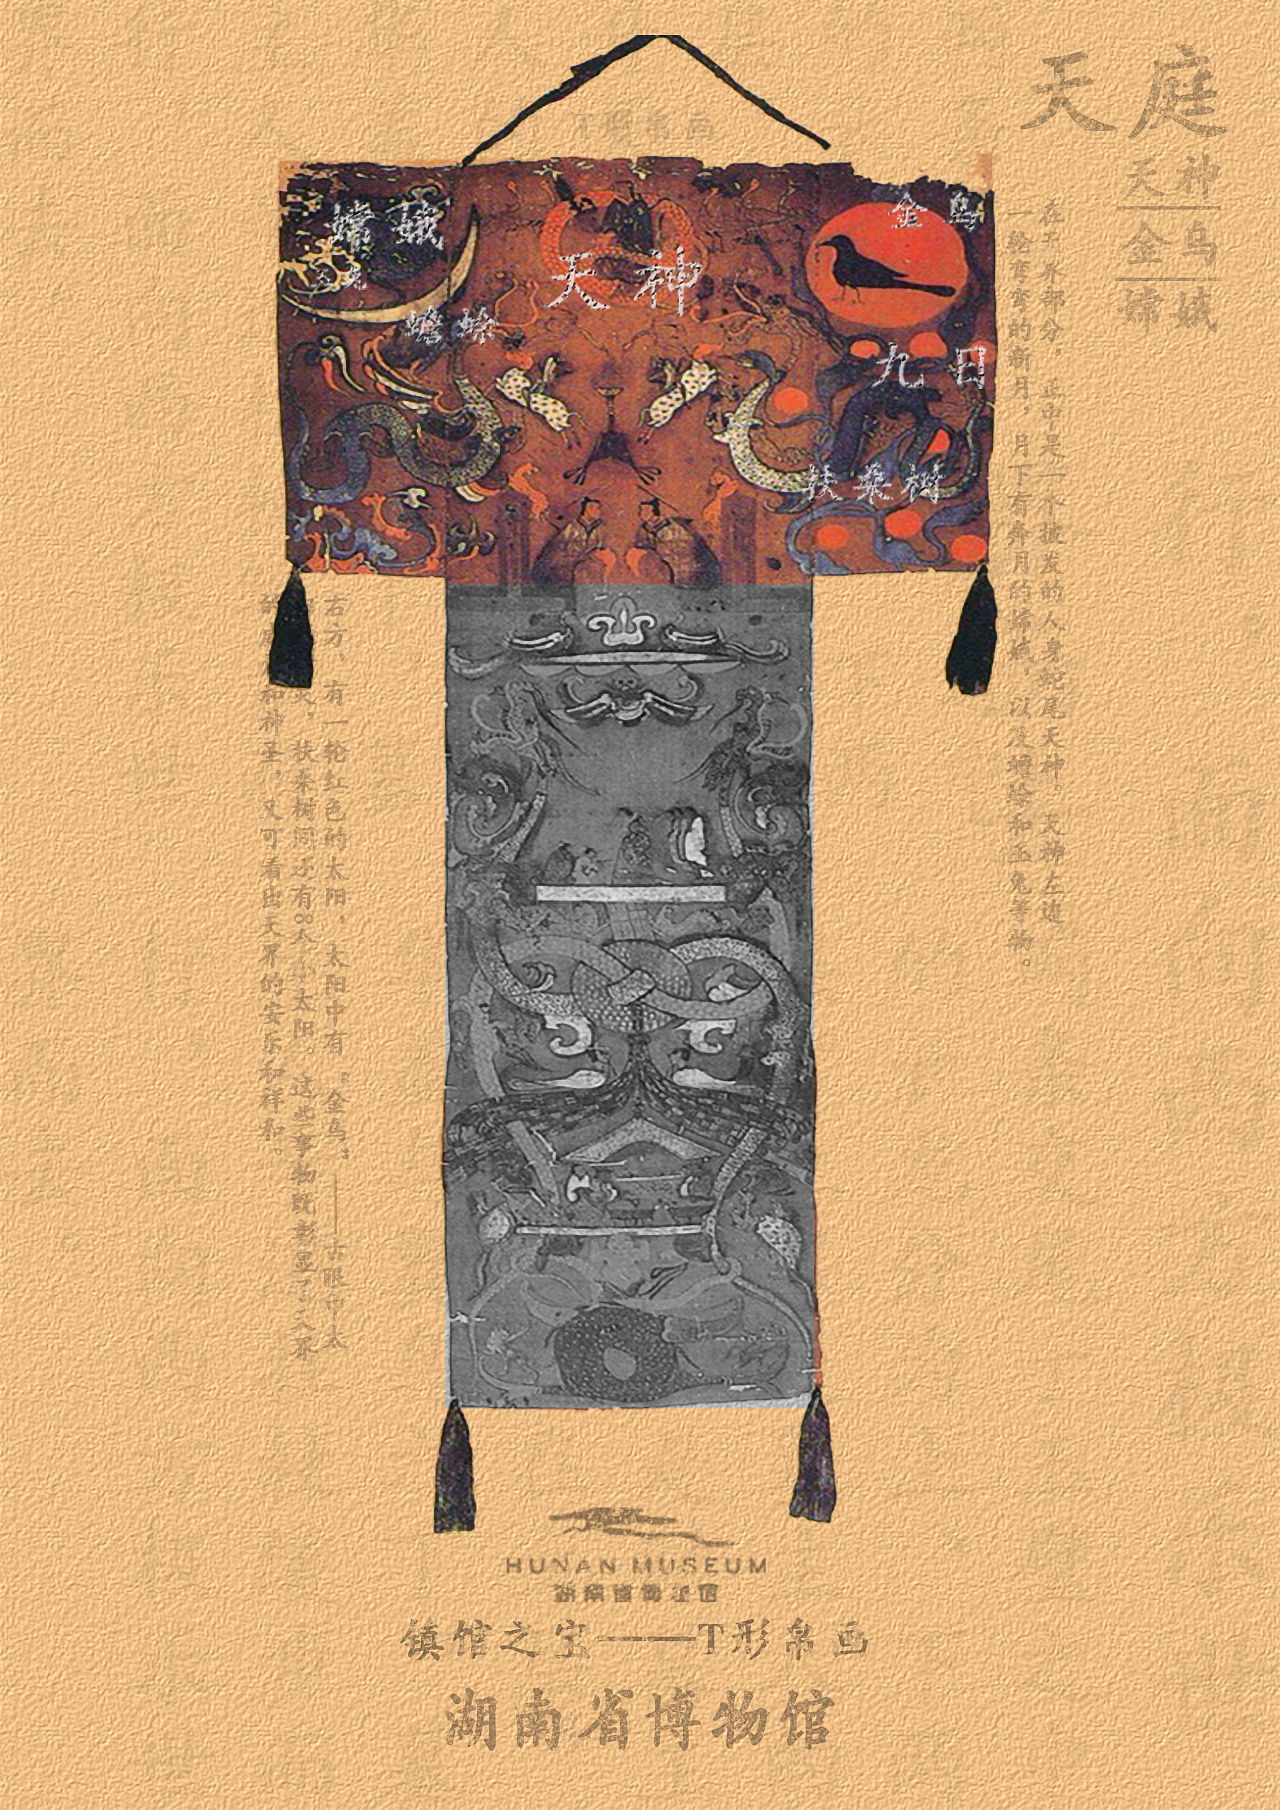 学校课程作业,为湖南省博物馆设计的广告